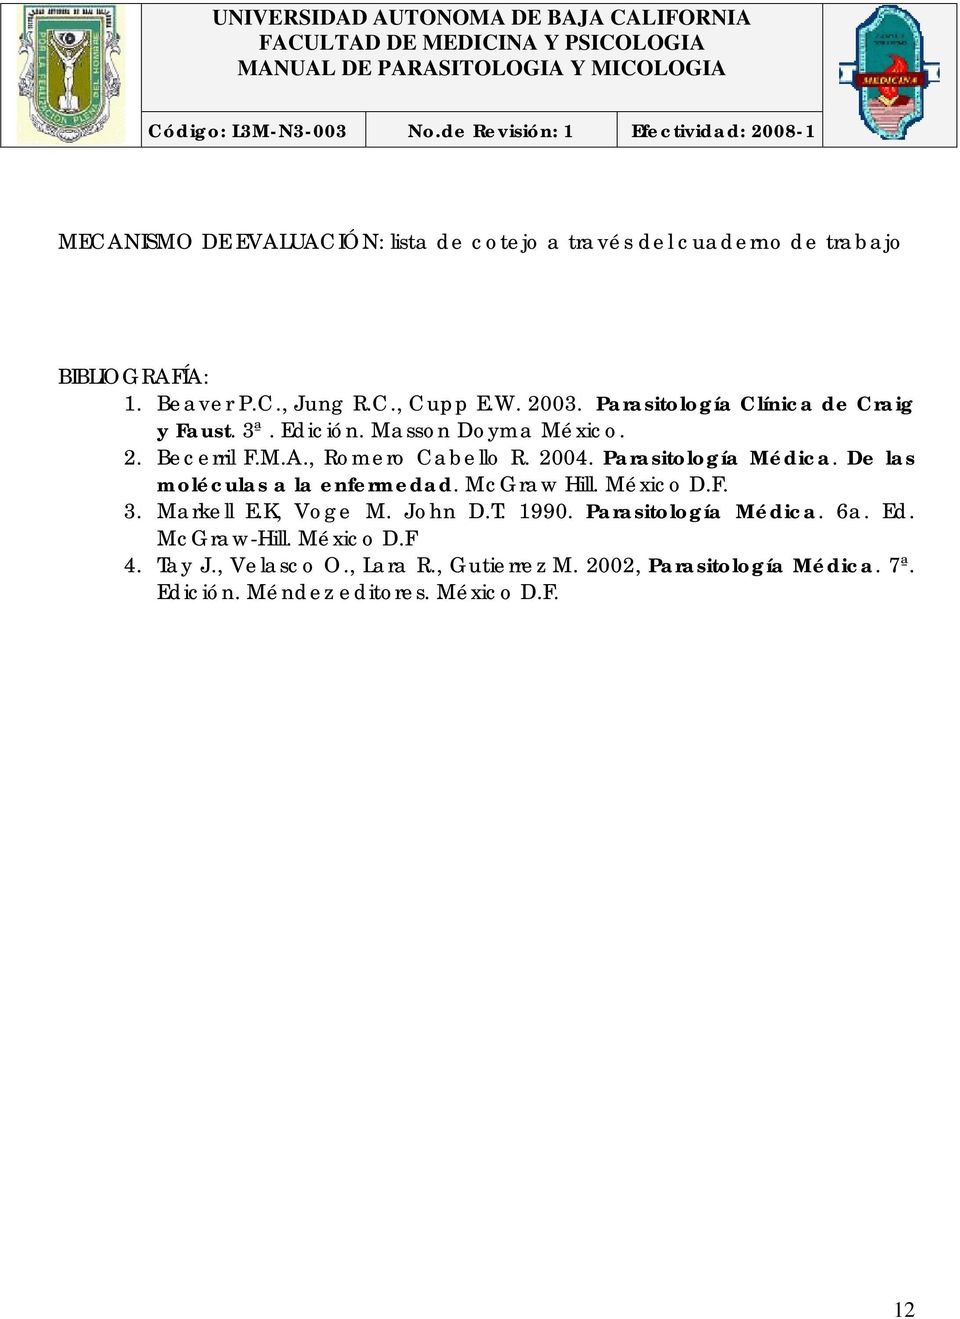 Parasitología Médica. De las moléculas a la enfermedad. McGraw Hill. México D.F. 3. Markell E.K, Voge M. John D.T. 1990.